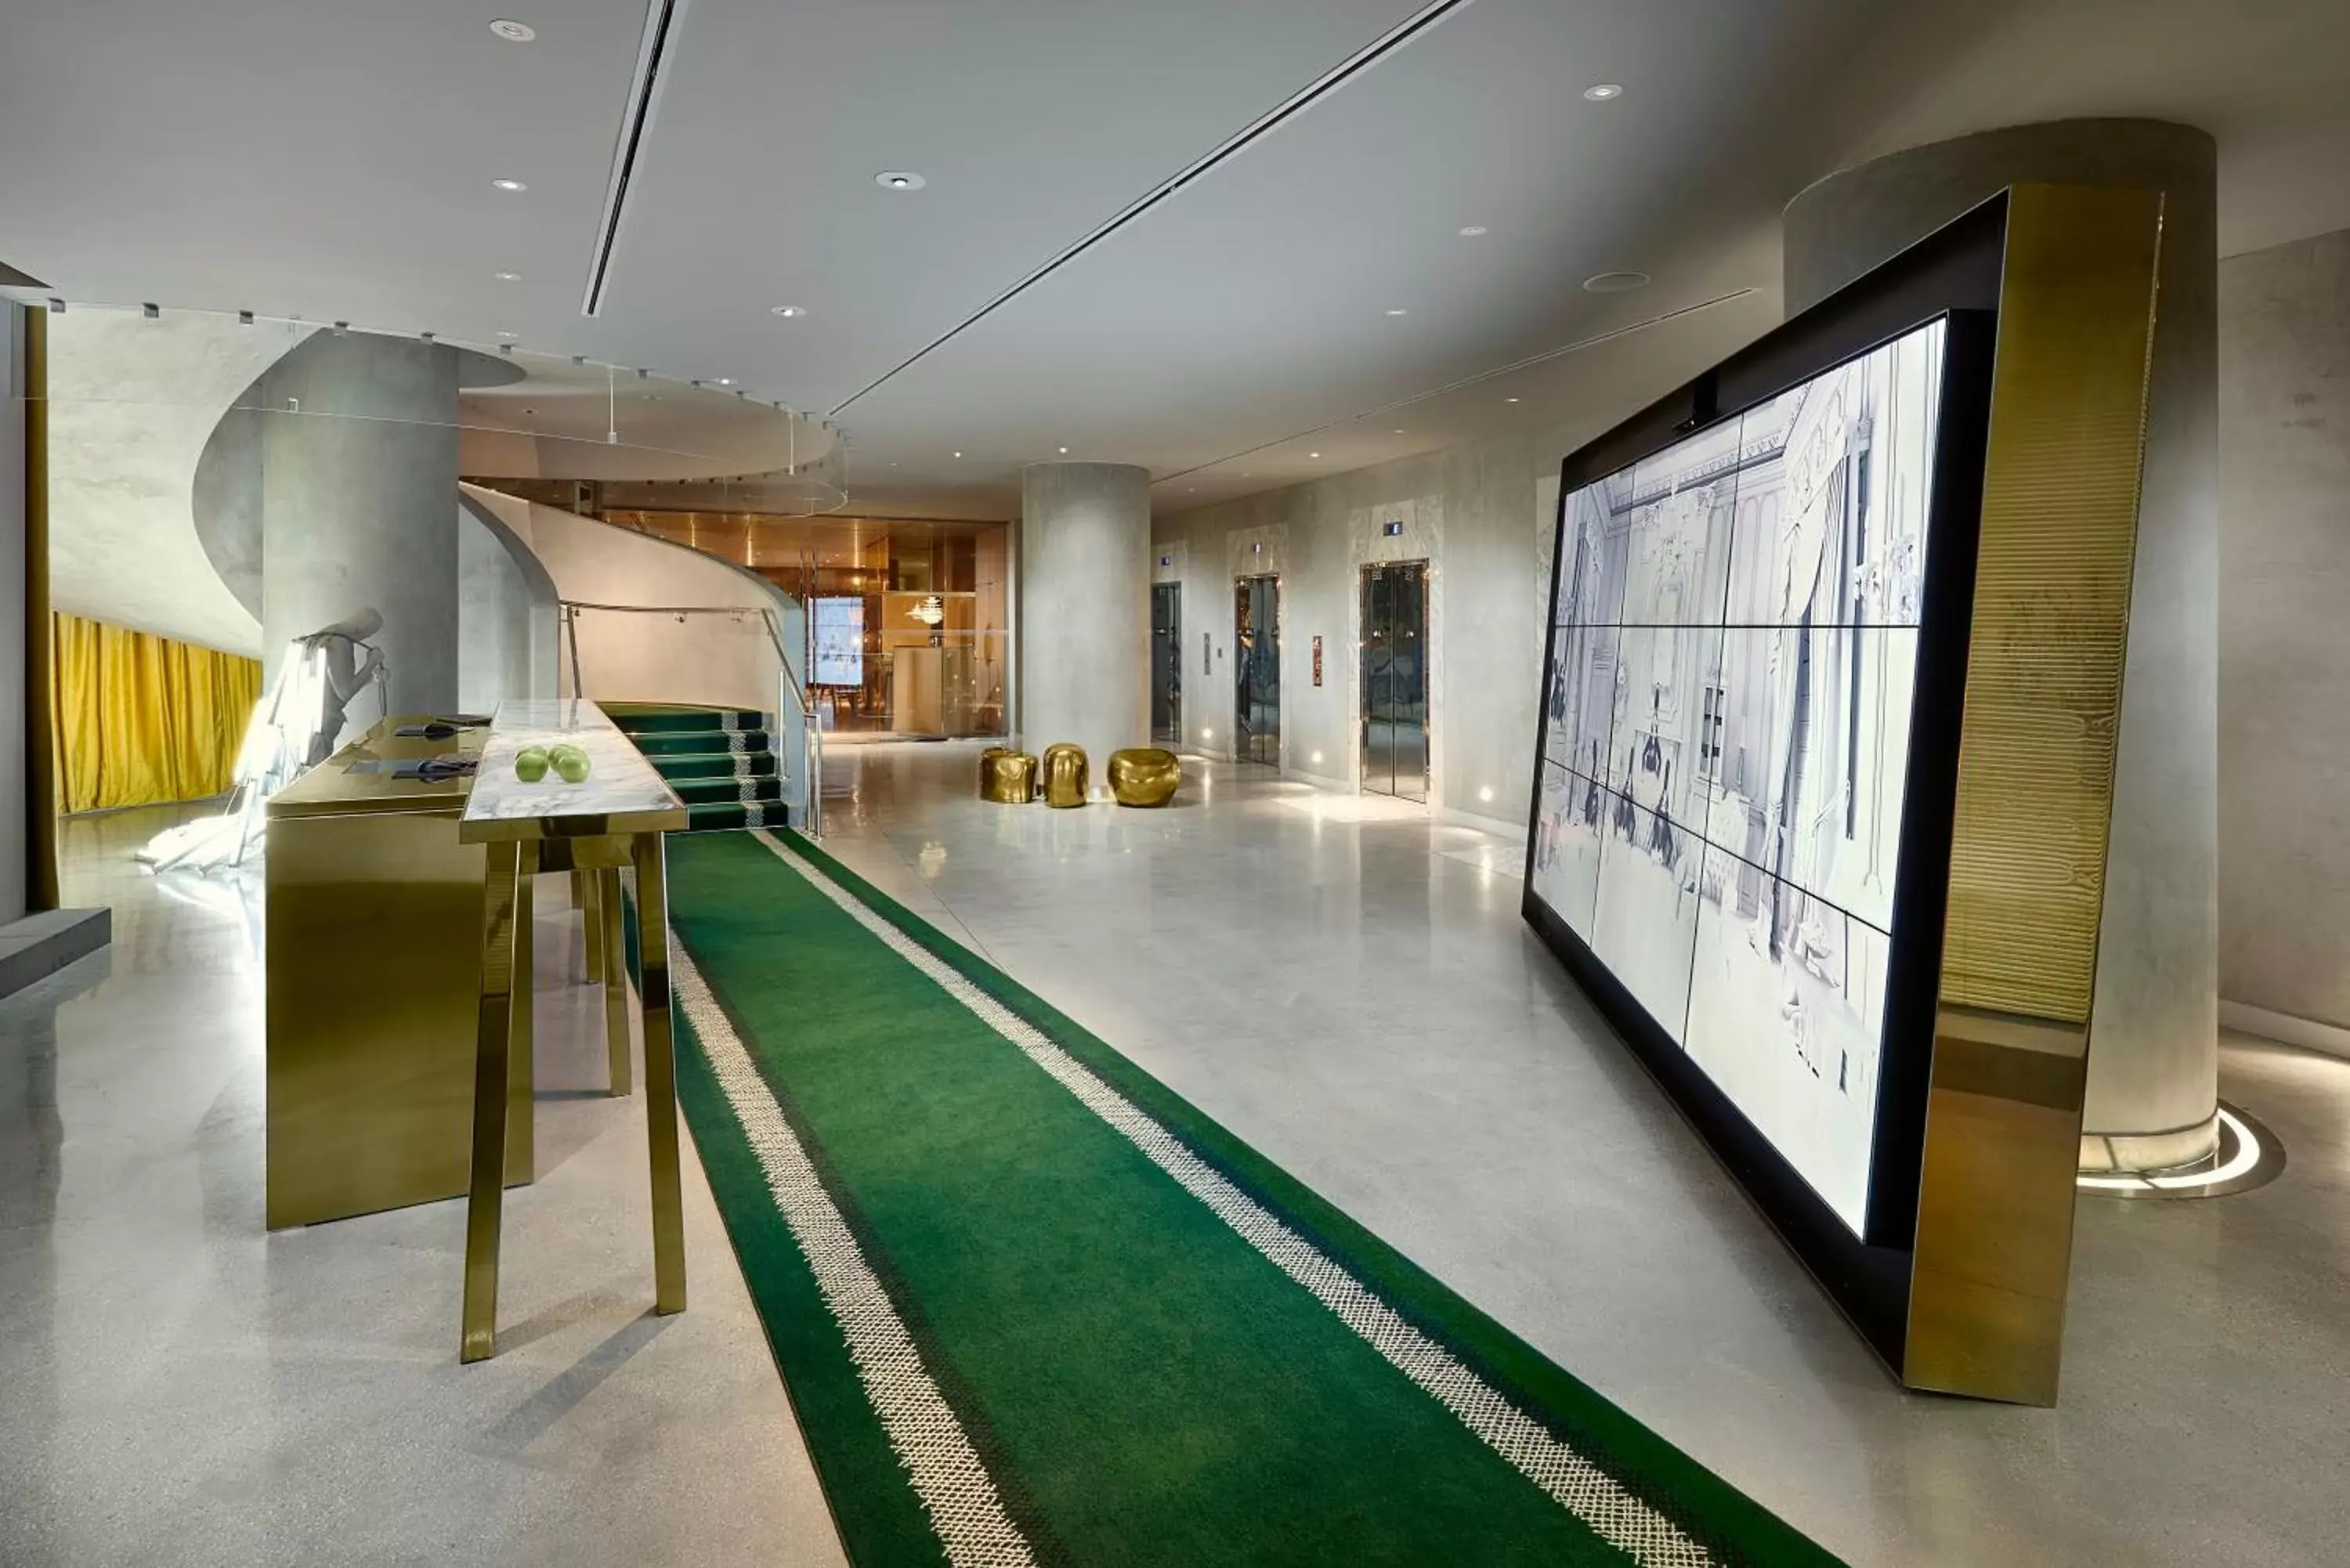 Lobby or reception in SLS Brickell